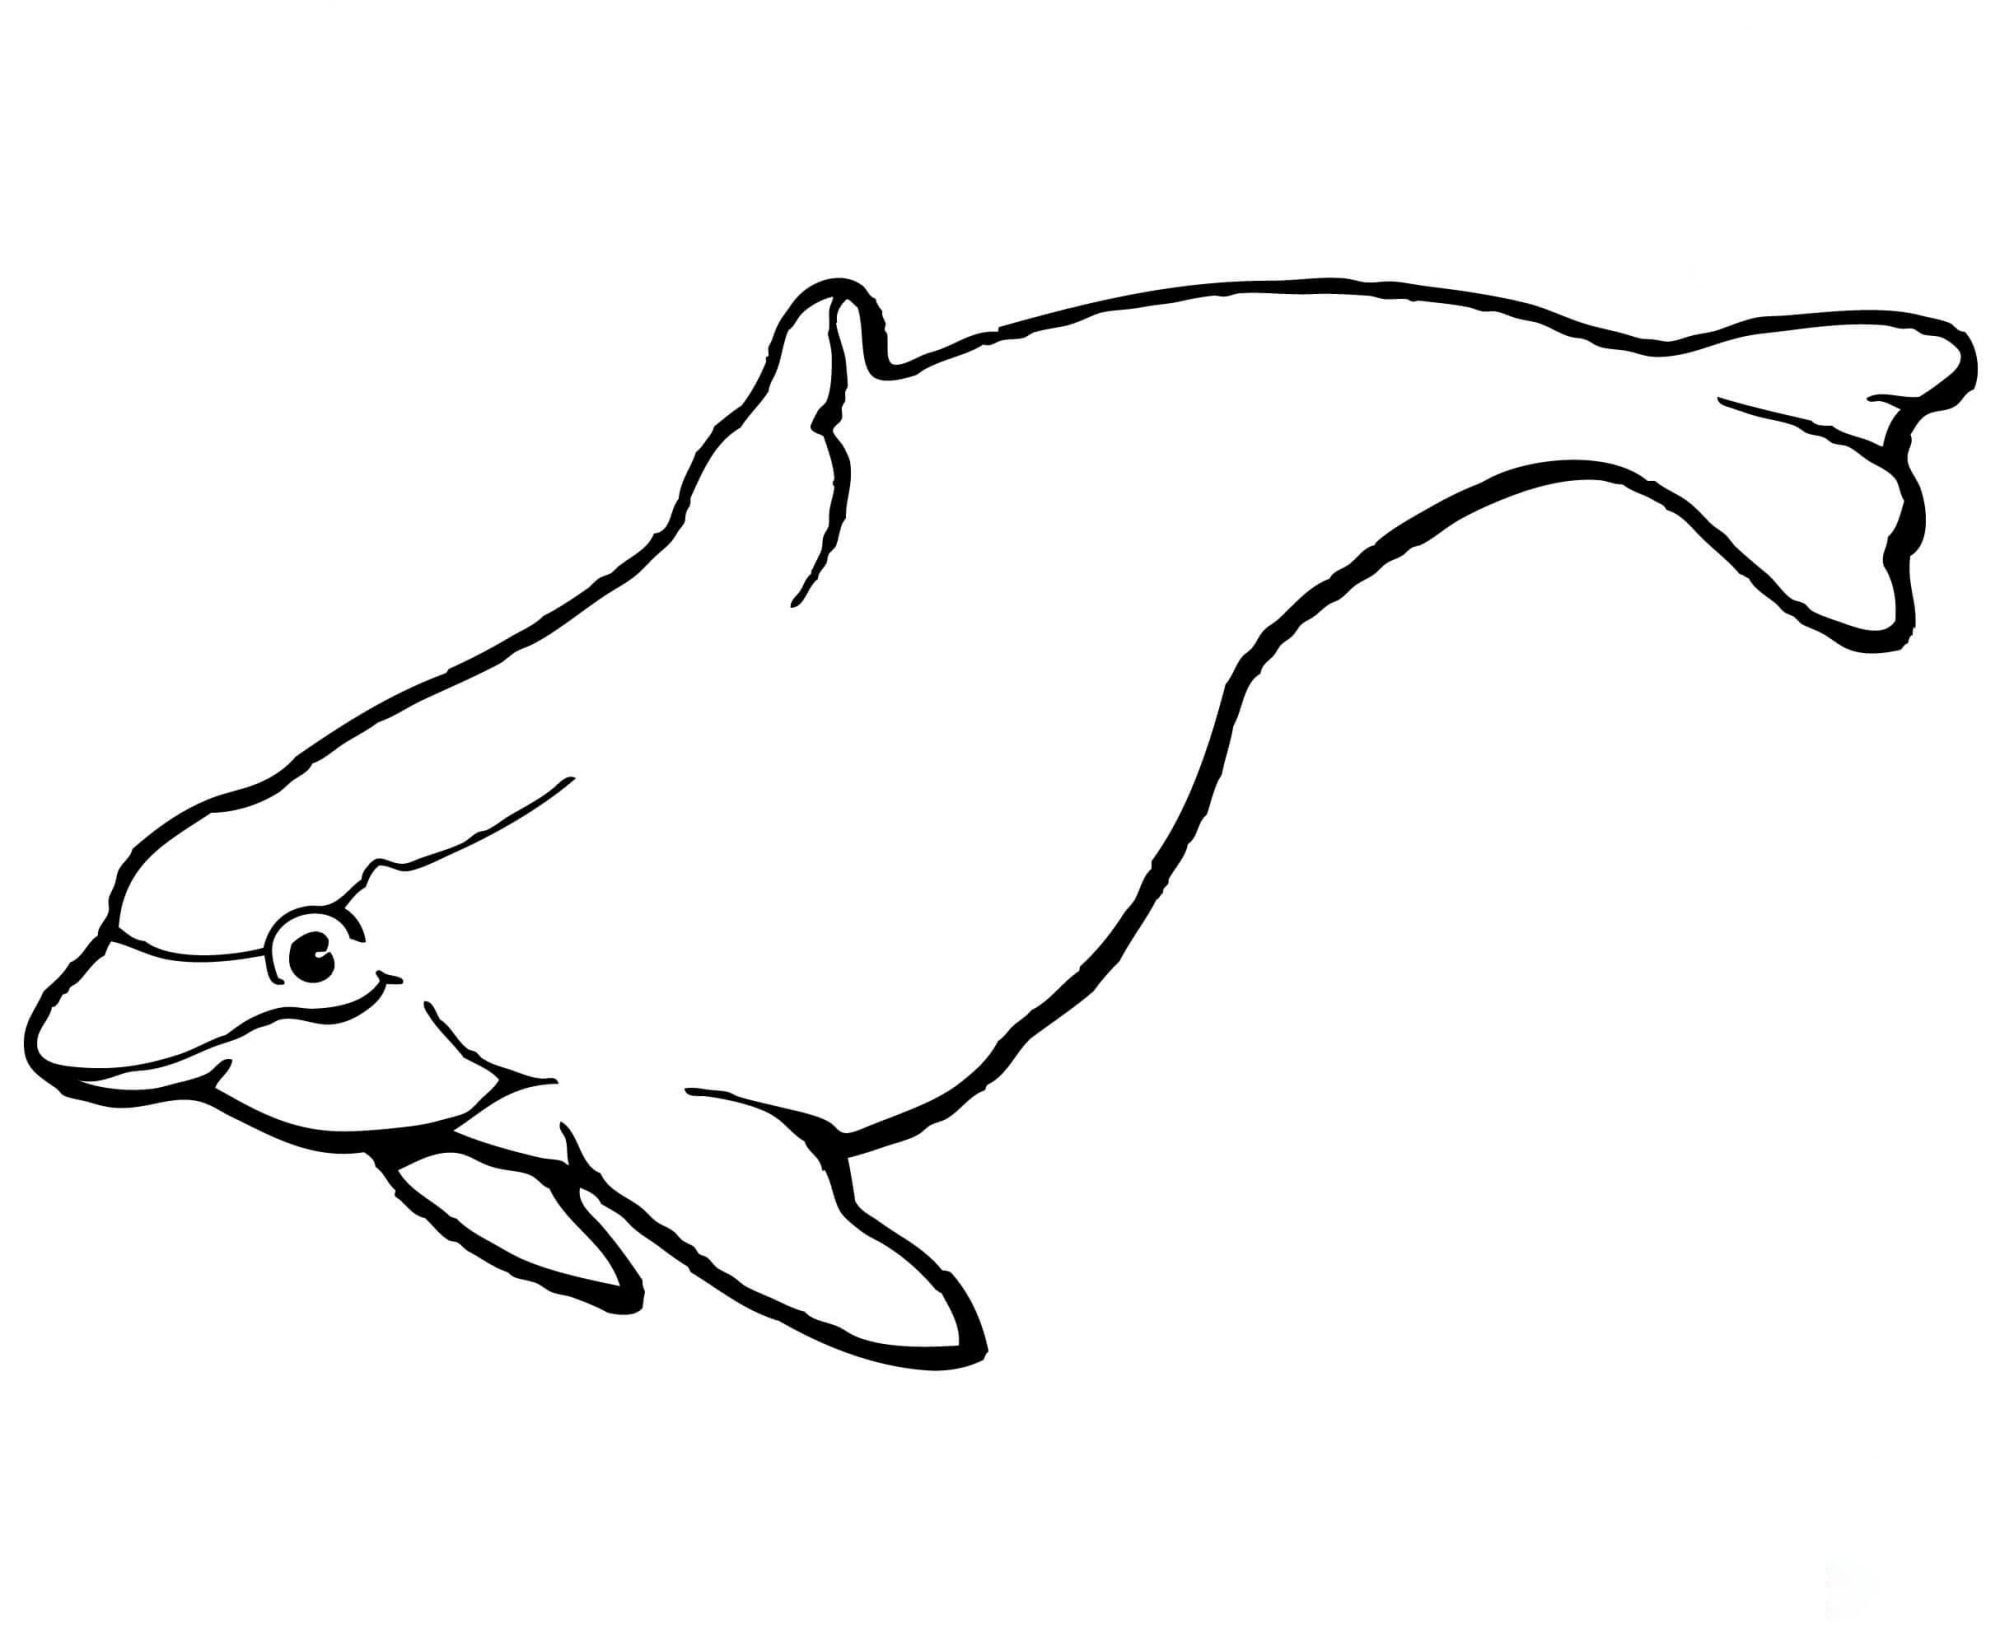 De bruinvis heeft een bolvormige kop en een torpedovormig lichaam van Dolphin